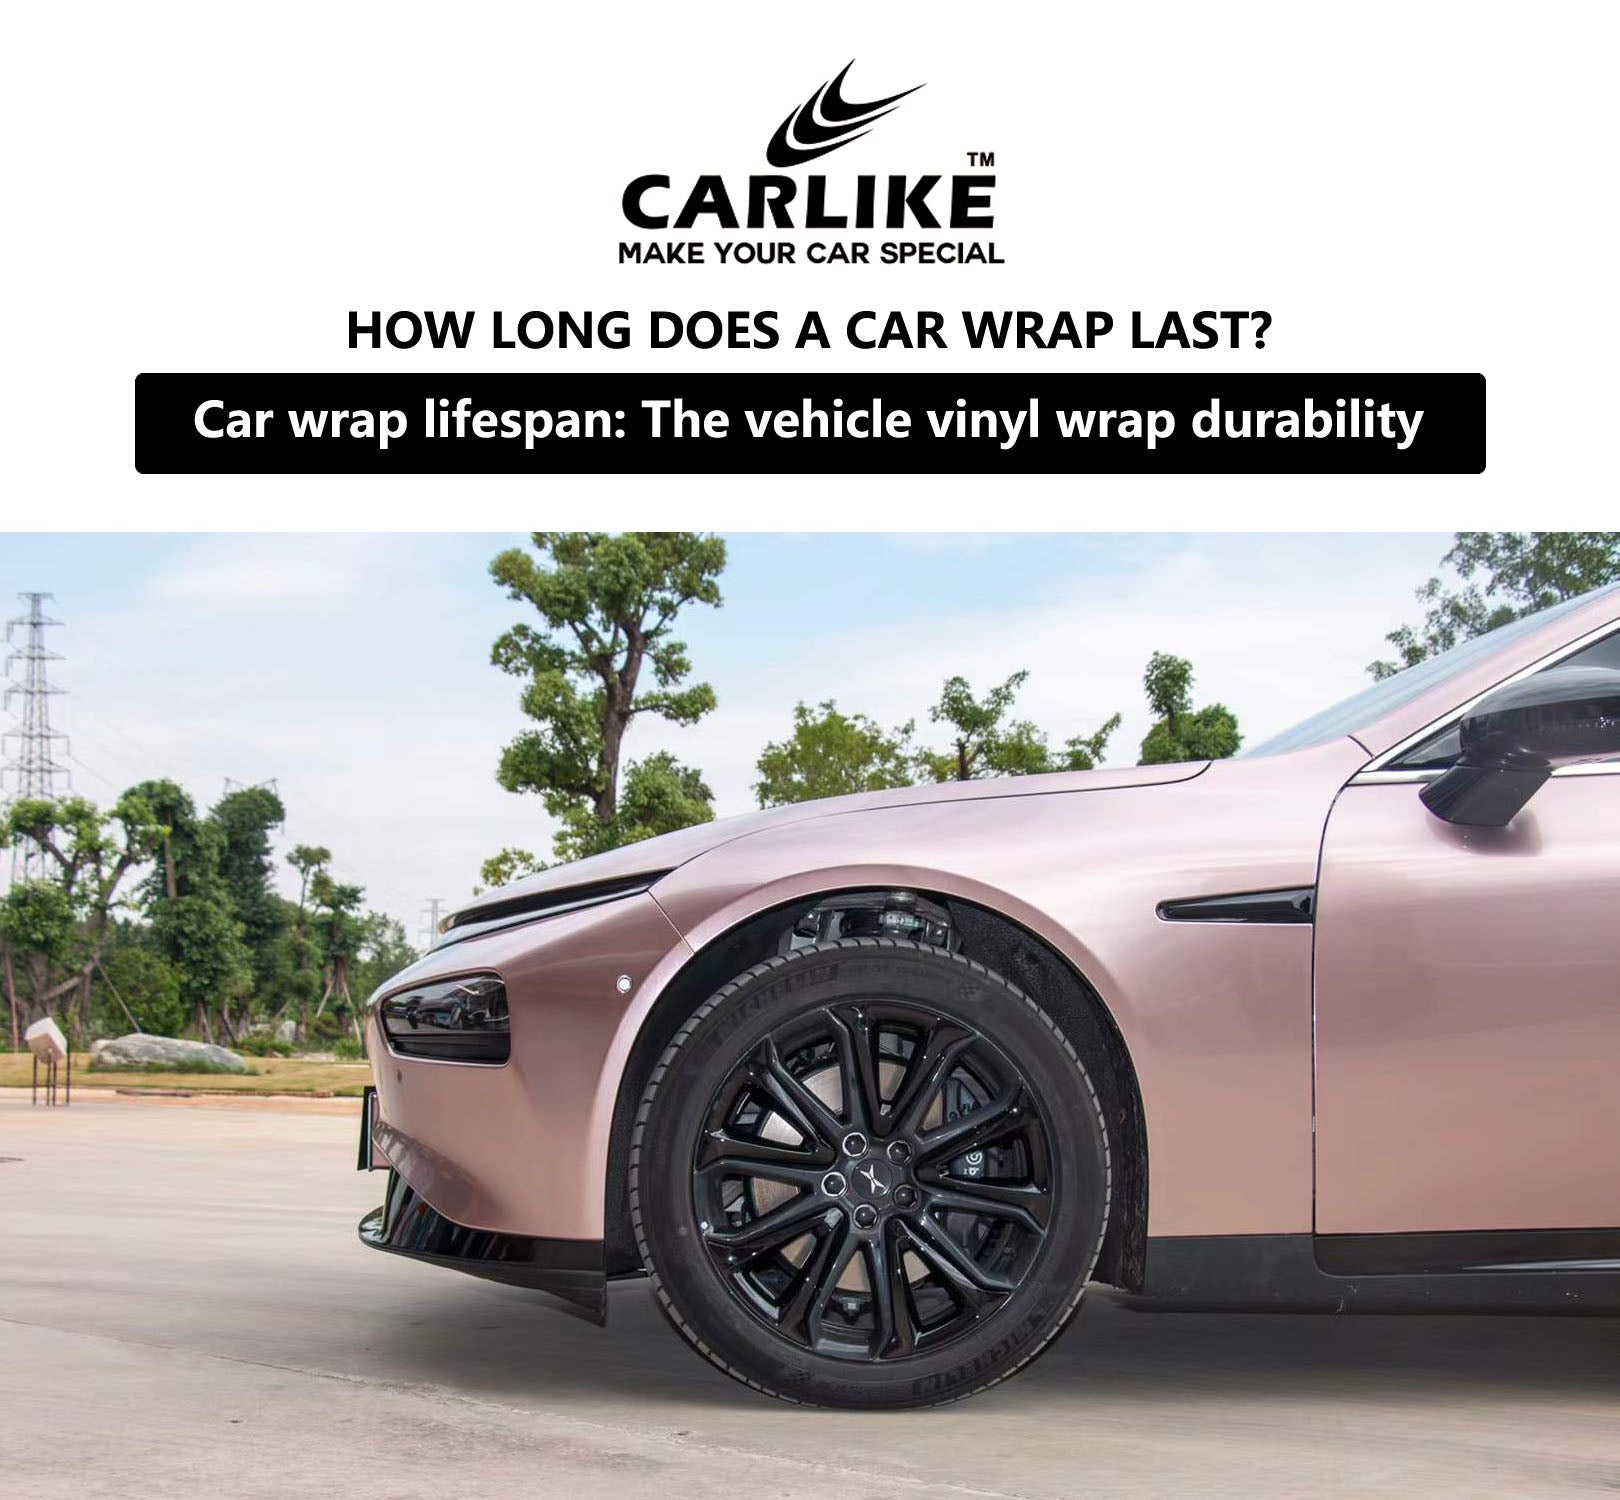 Pintura o Wrap, ¿Qué es mejor para tu coche?